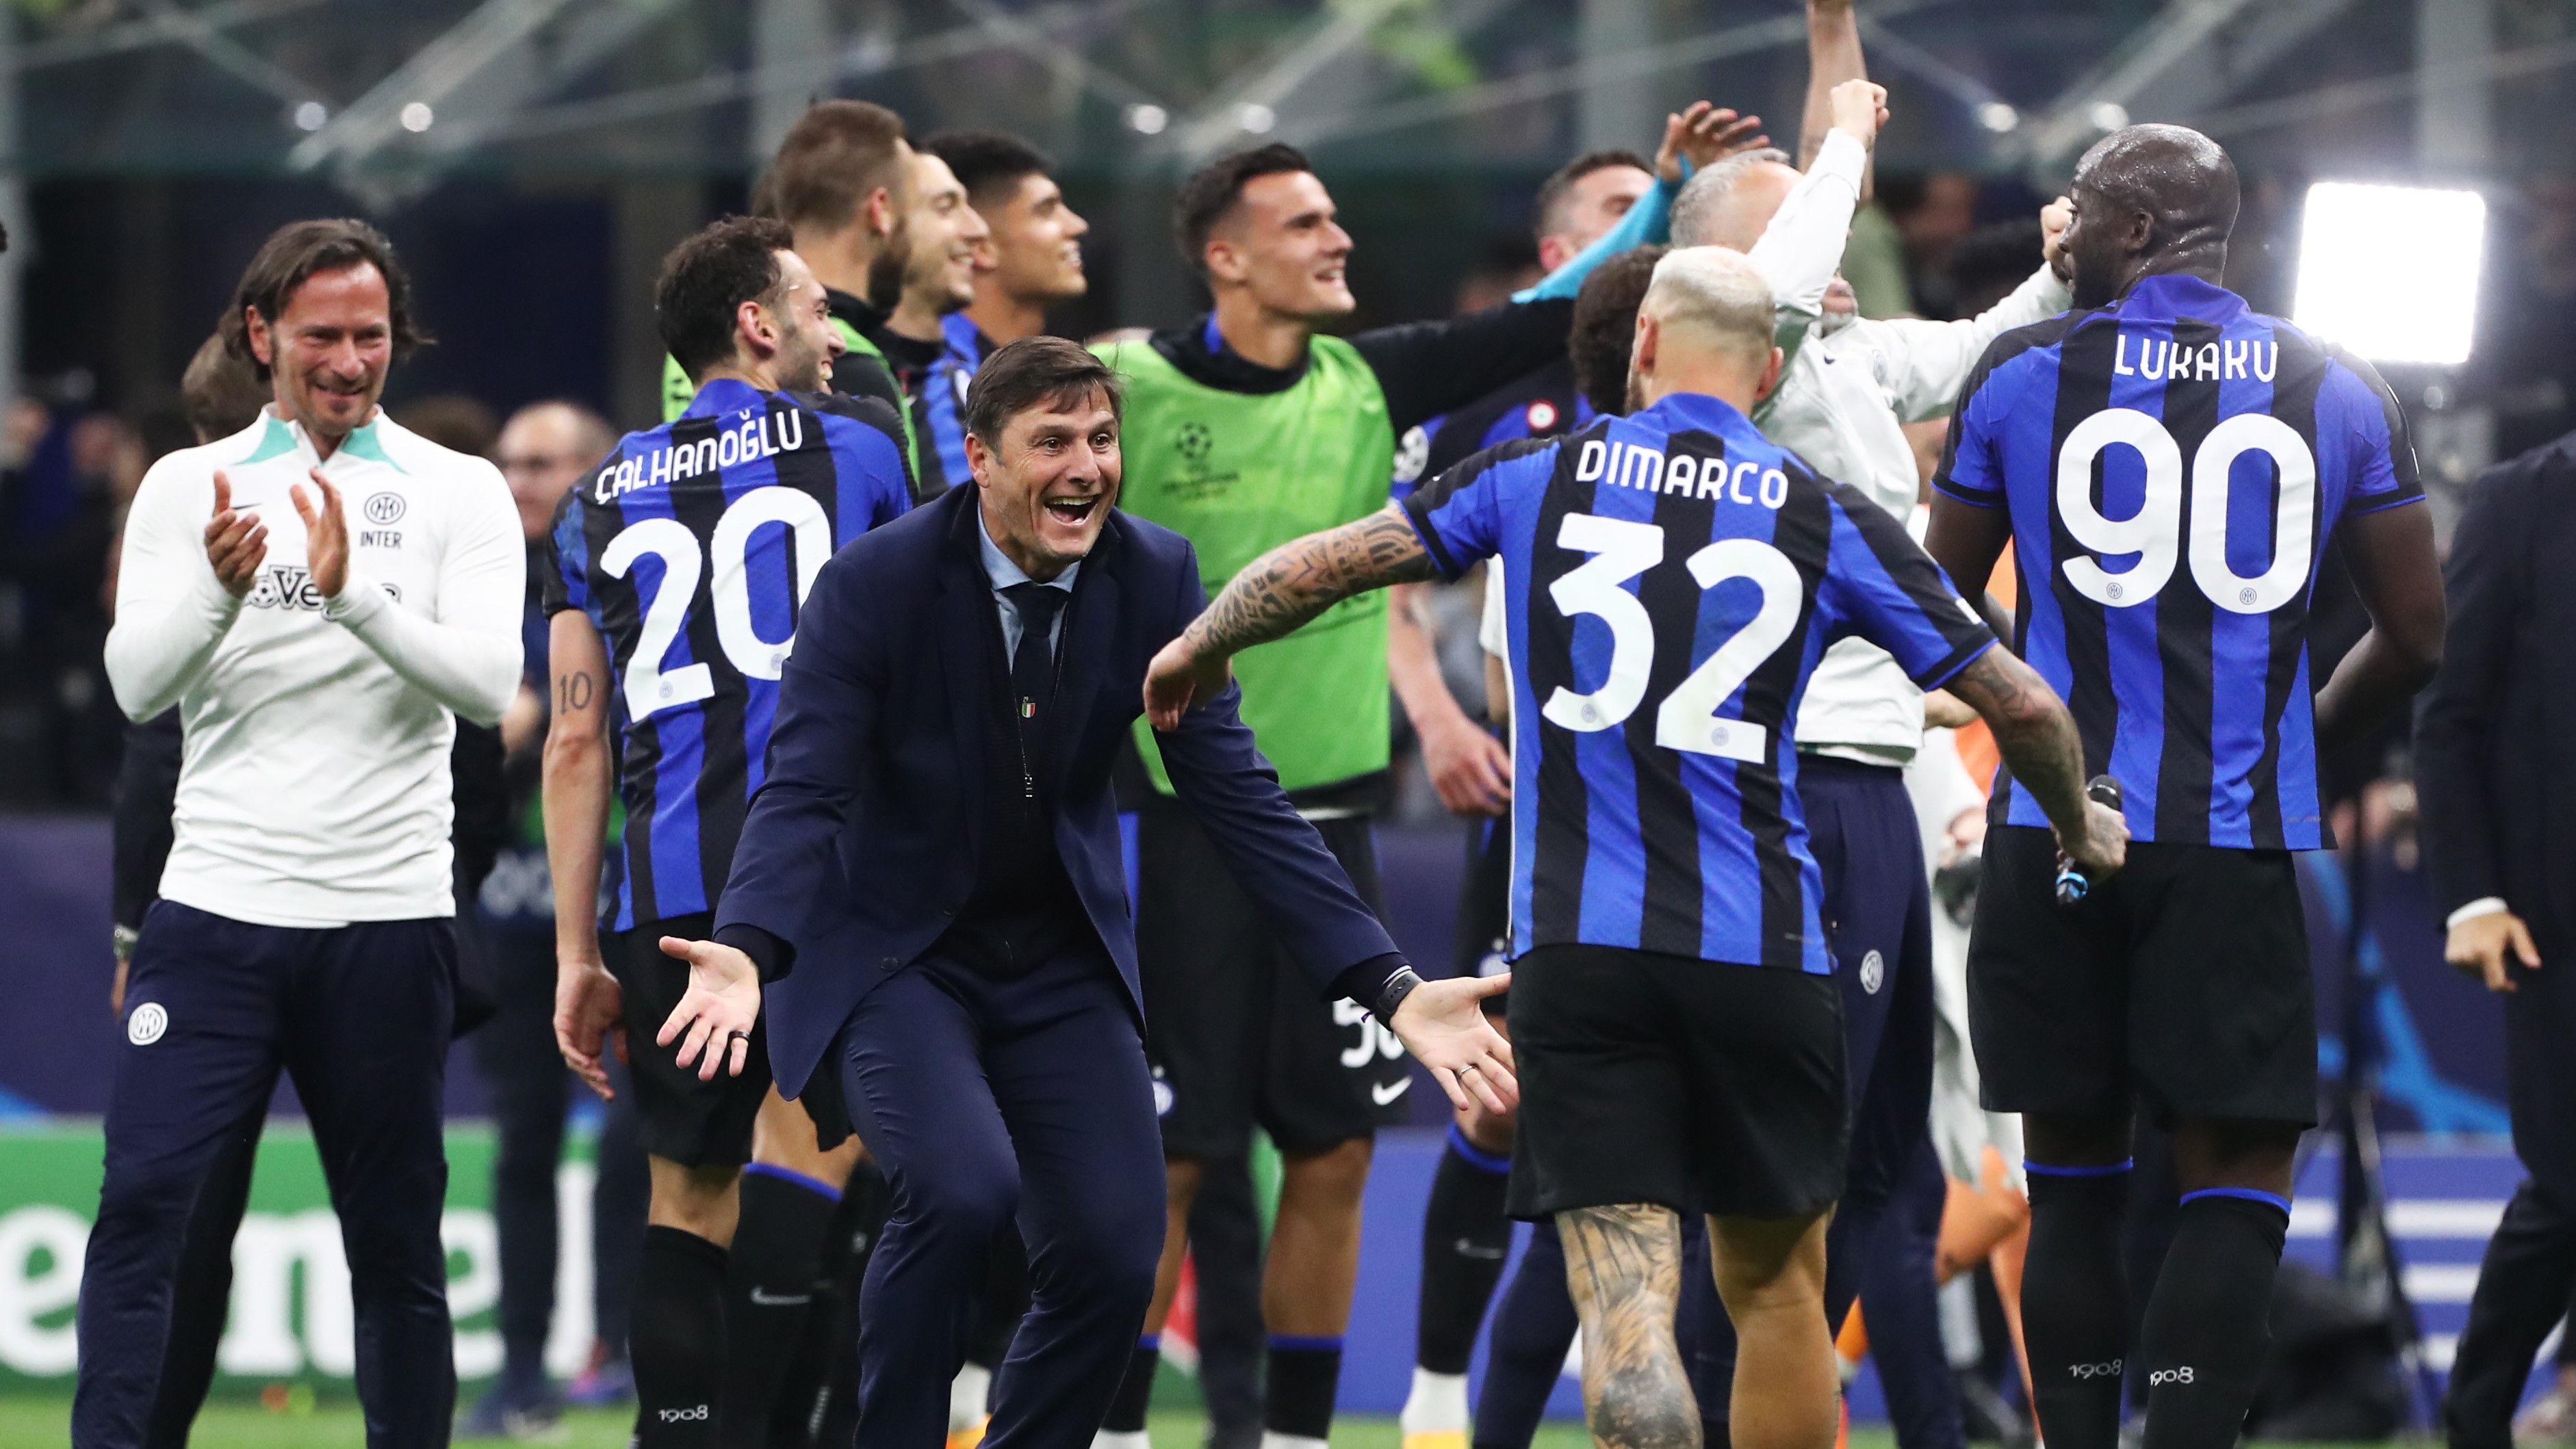 Az Inter alelnöke, Javier Zanetti elárulta, melyik csapatot akarja elkerülni a fináléban